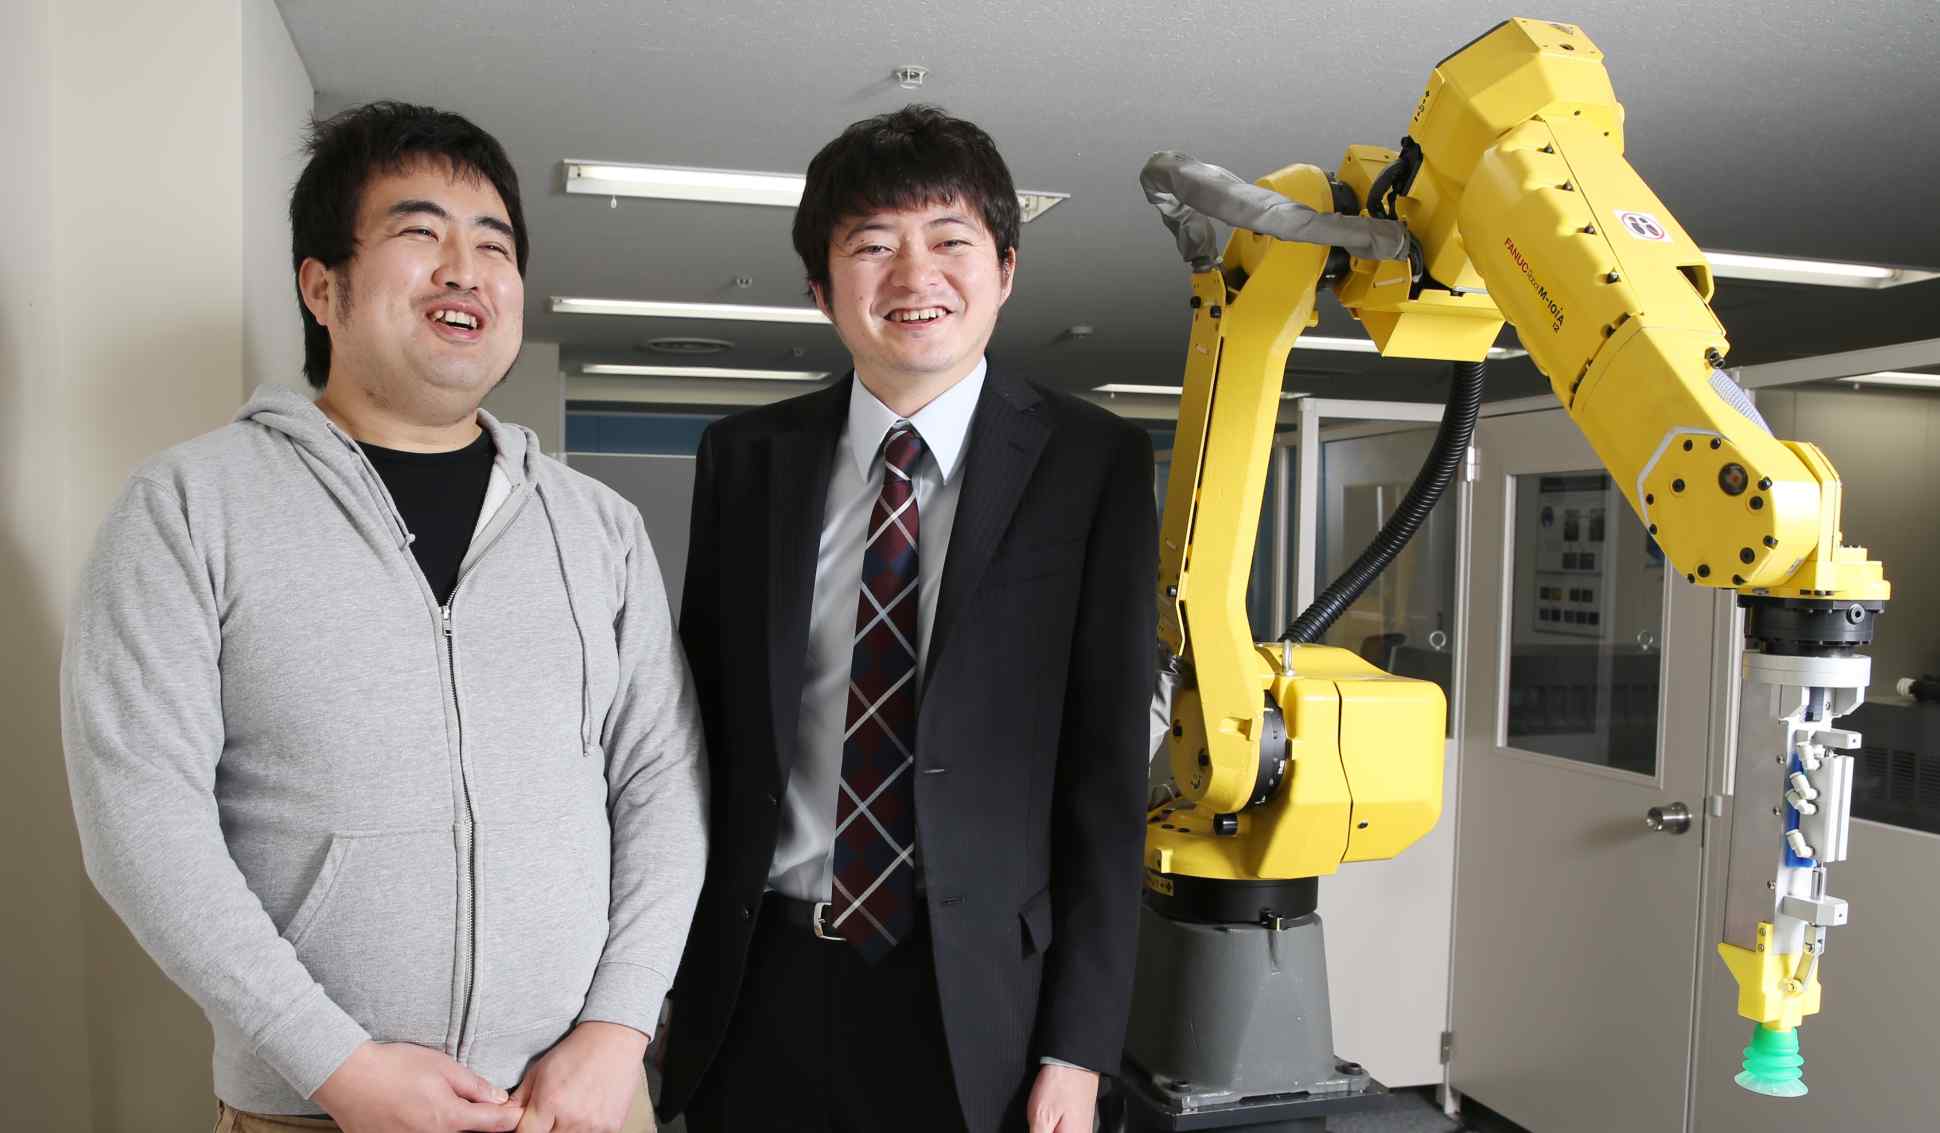 oru Nishikawa and Daisuke Okanohara in the lab